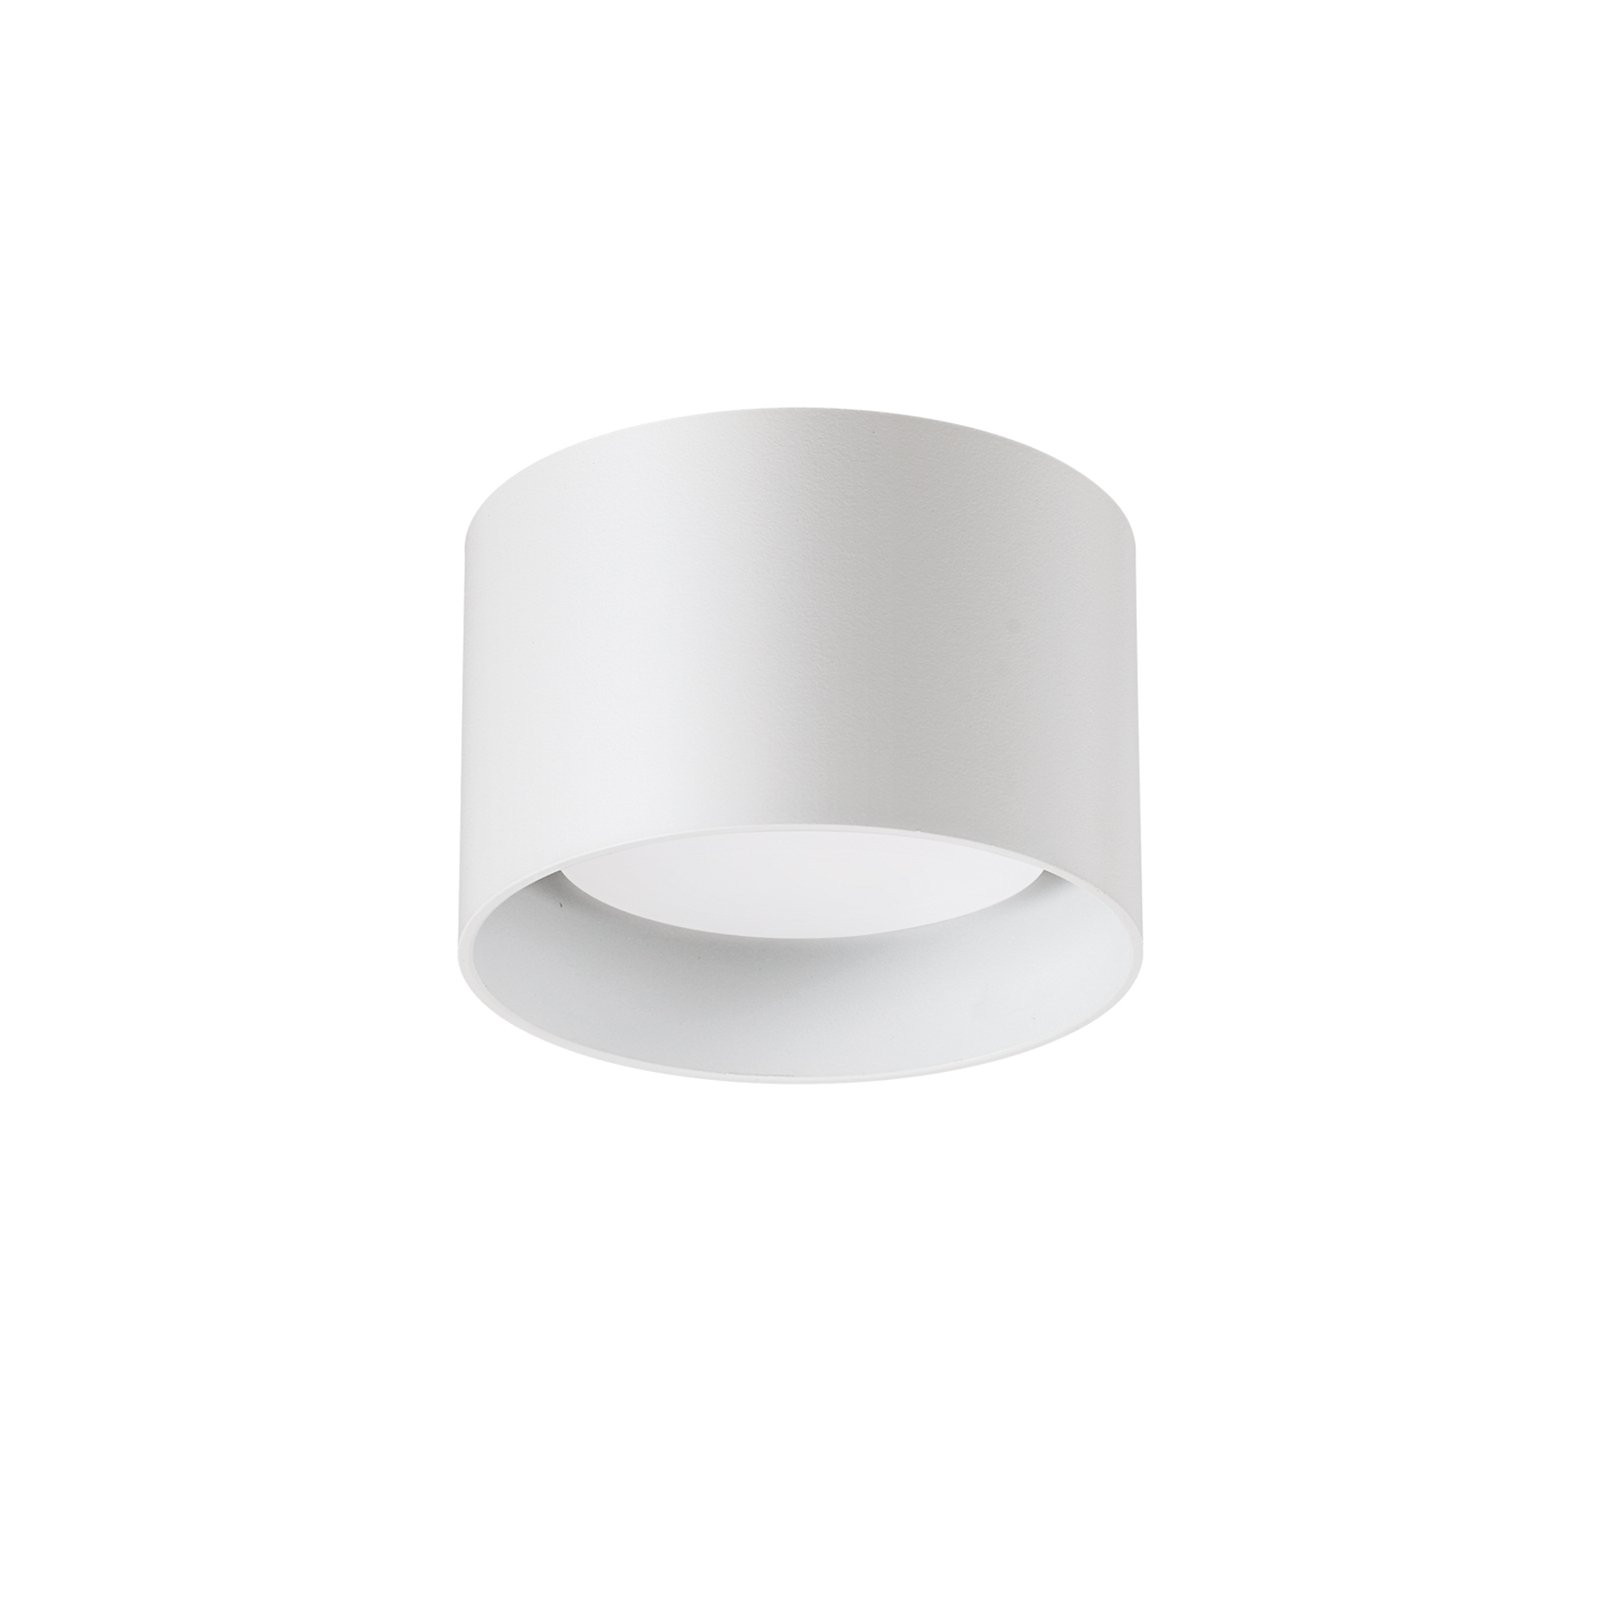 Ideal Lux downlight Spike Round, white, aluminium, Ø 10 cm